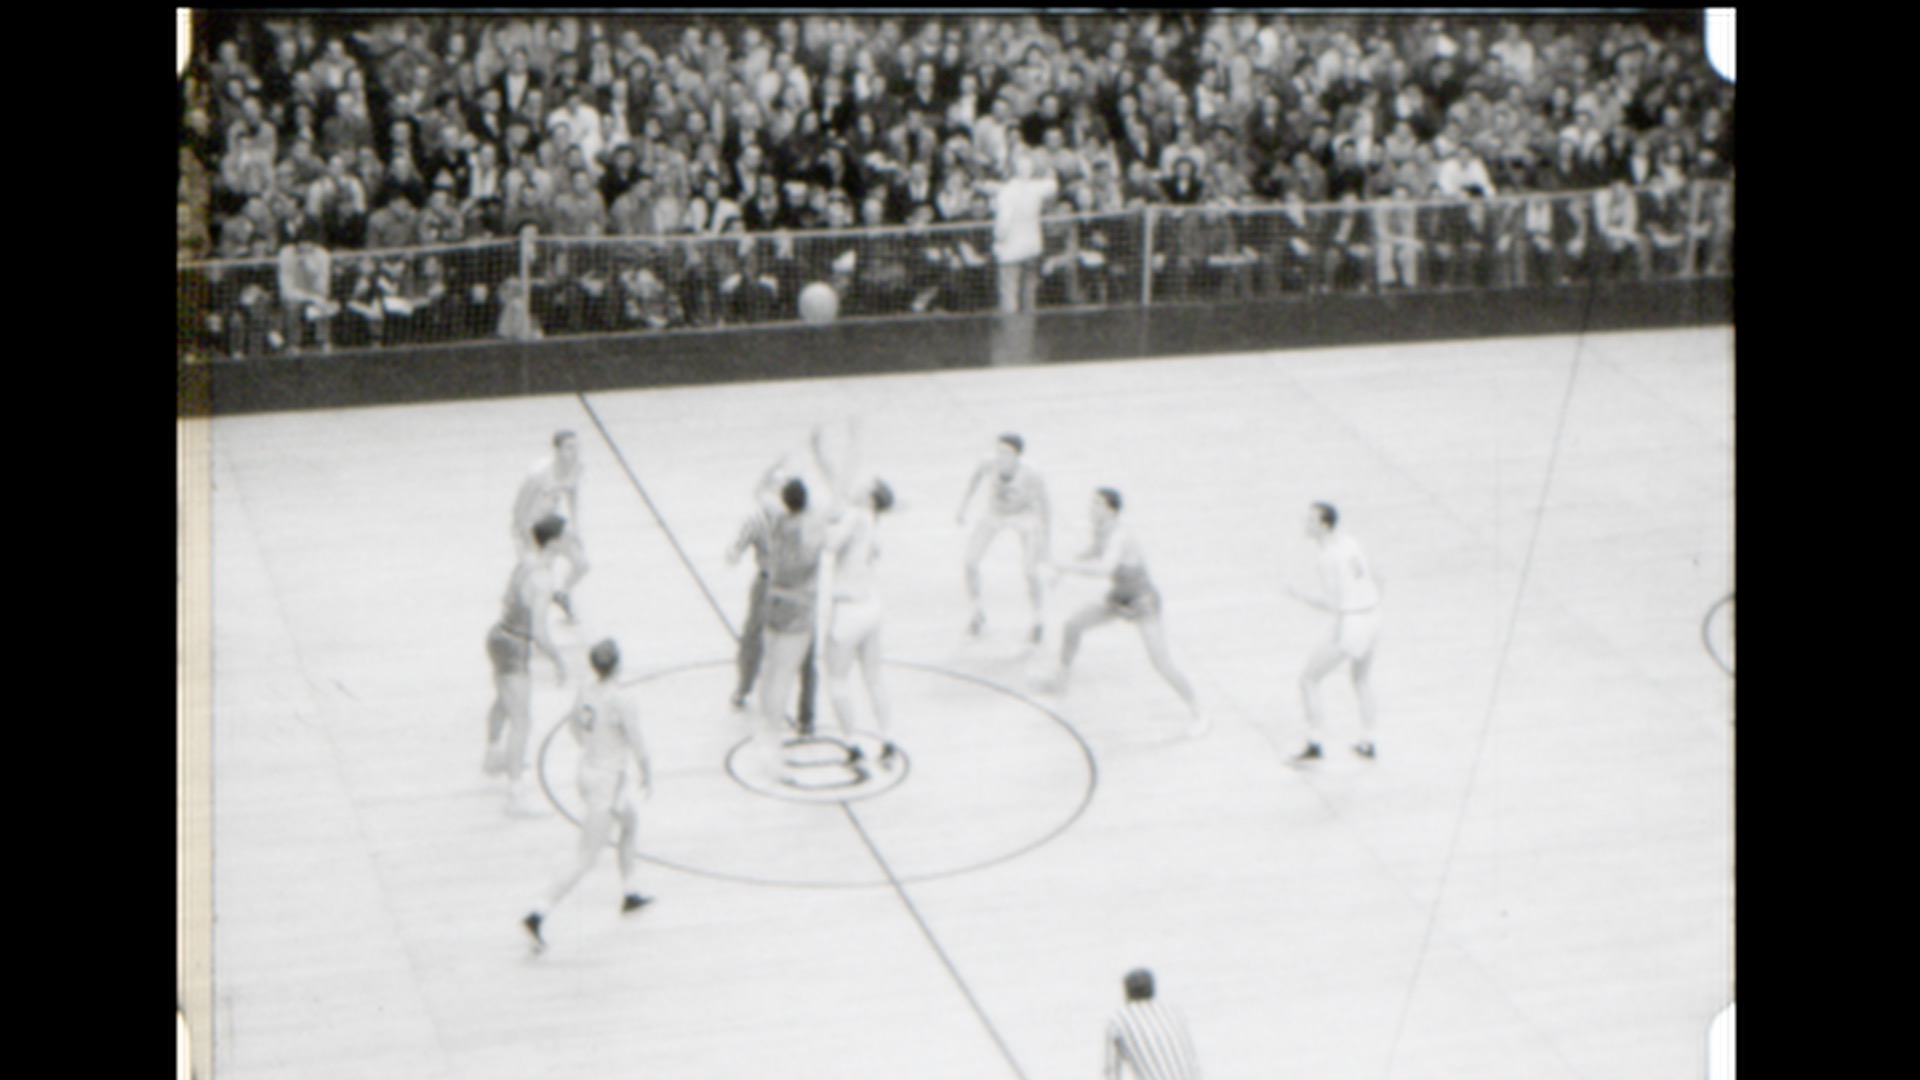 MSC Basketball vs. Notre Dame, 1949